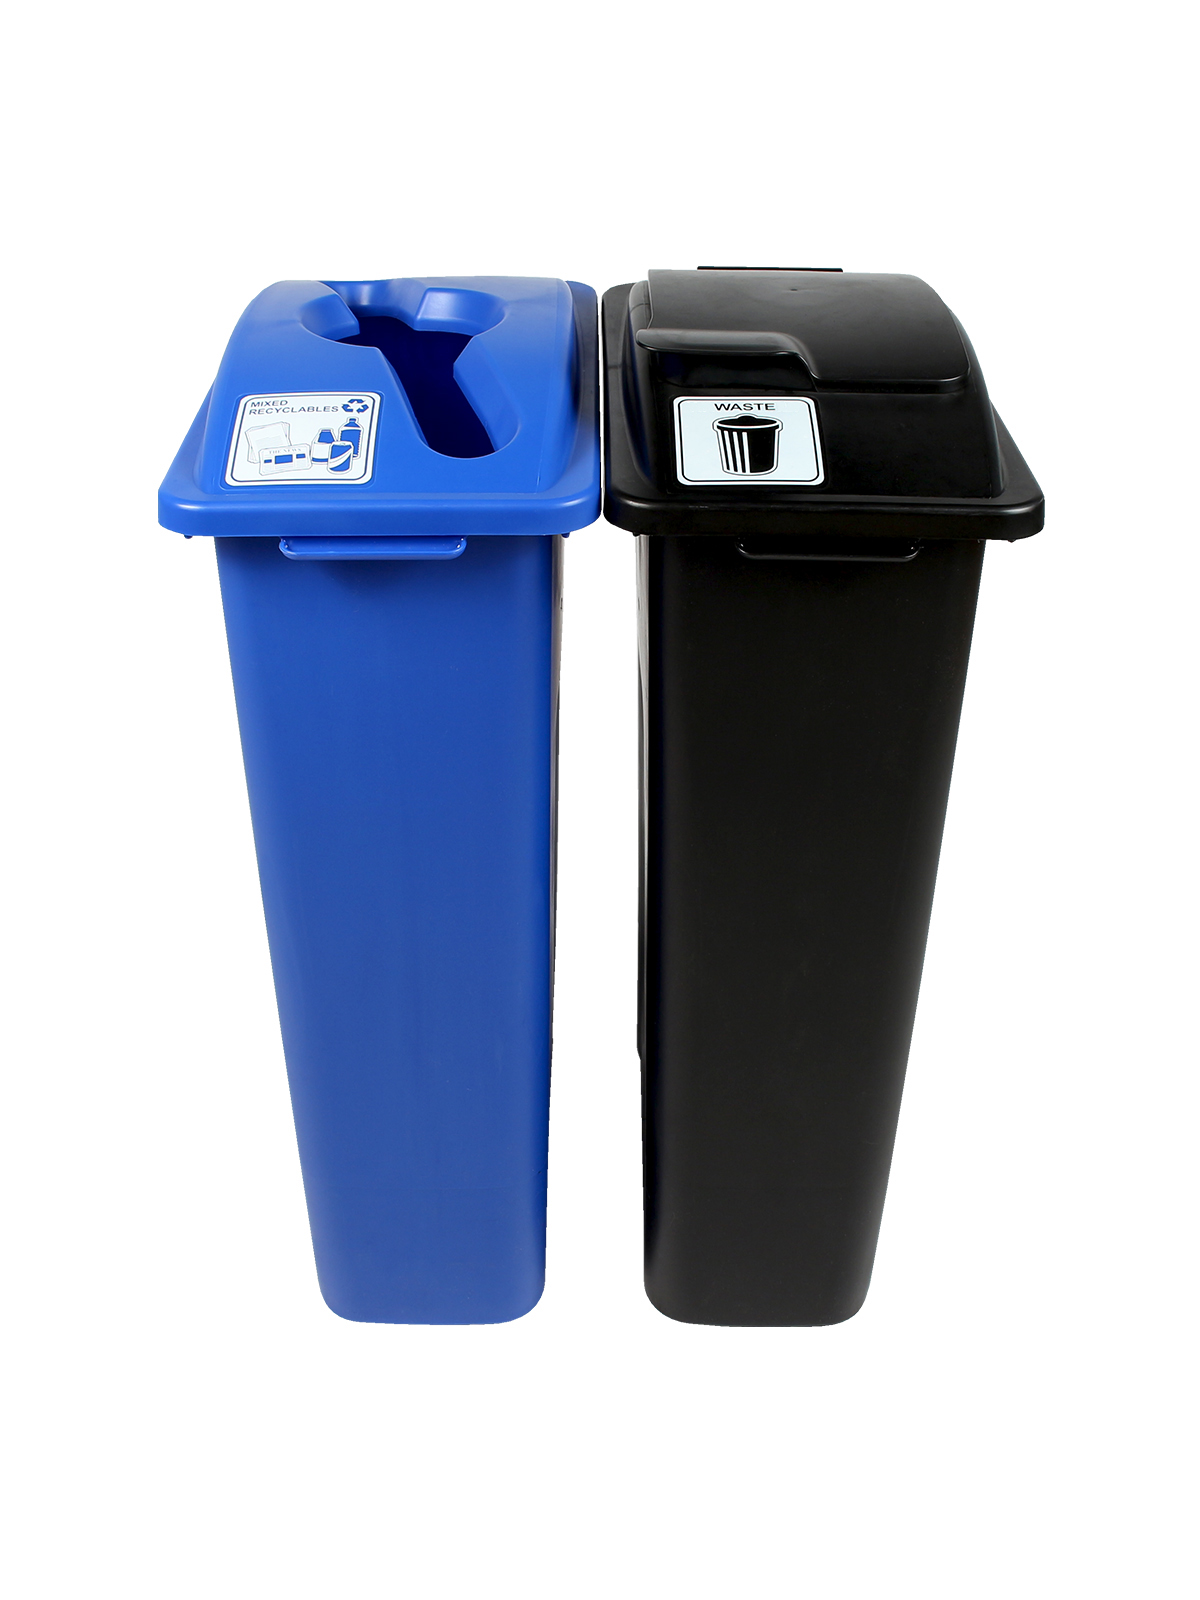 垃圾观察者 - 双混合回收 - 废物 - 混合固体升降机 - 蓝黑色